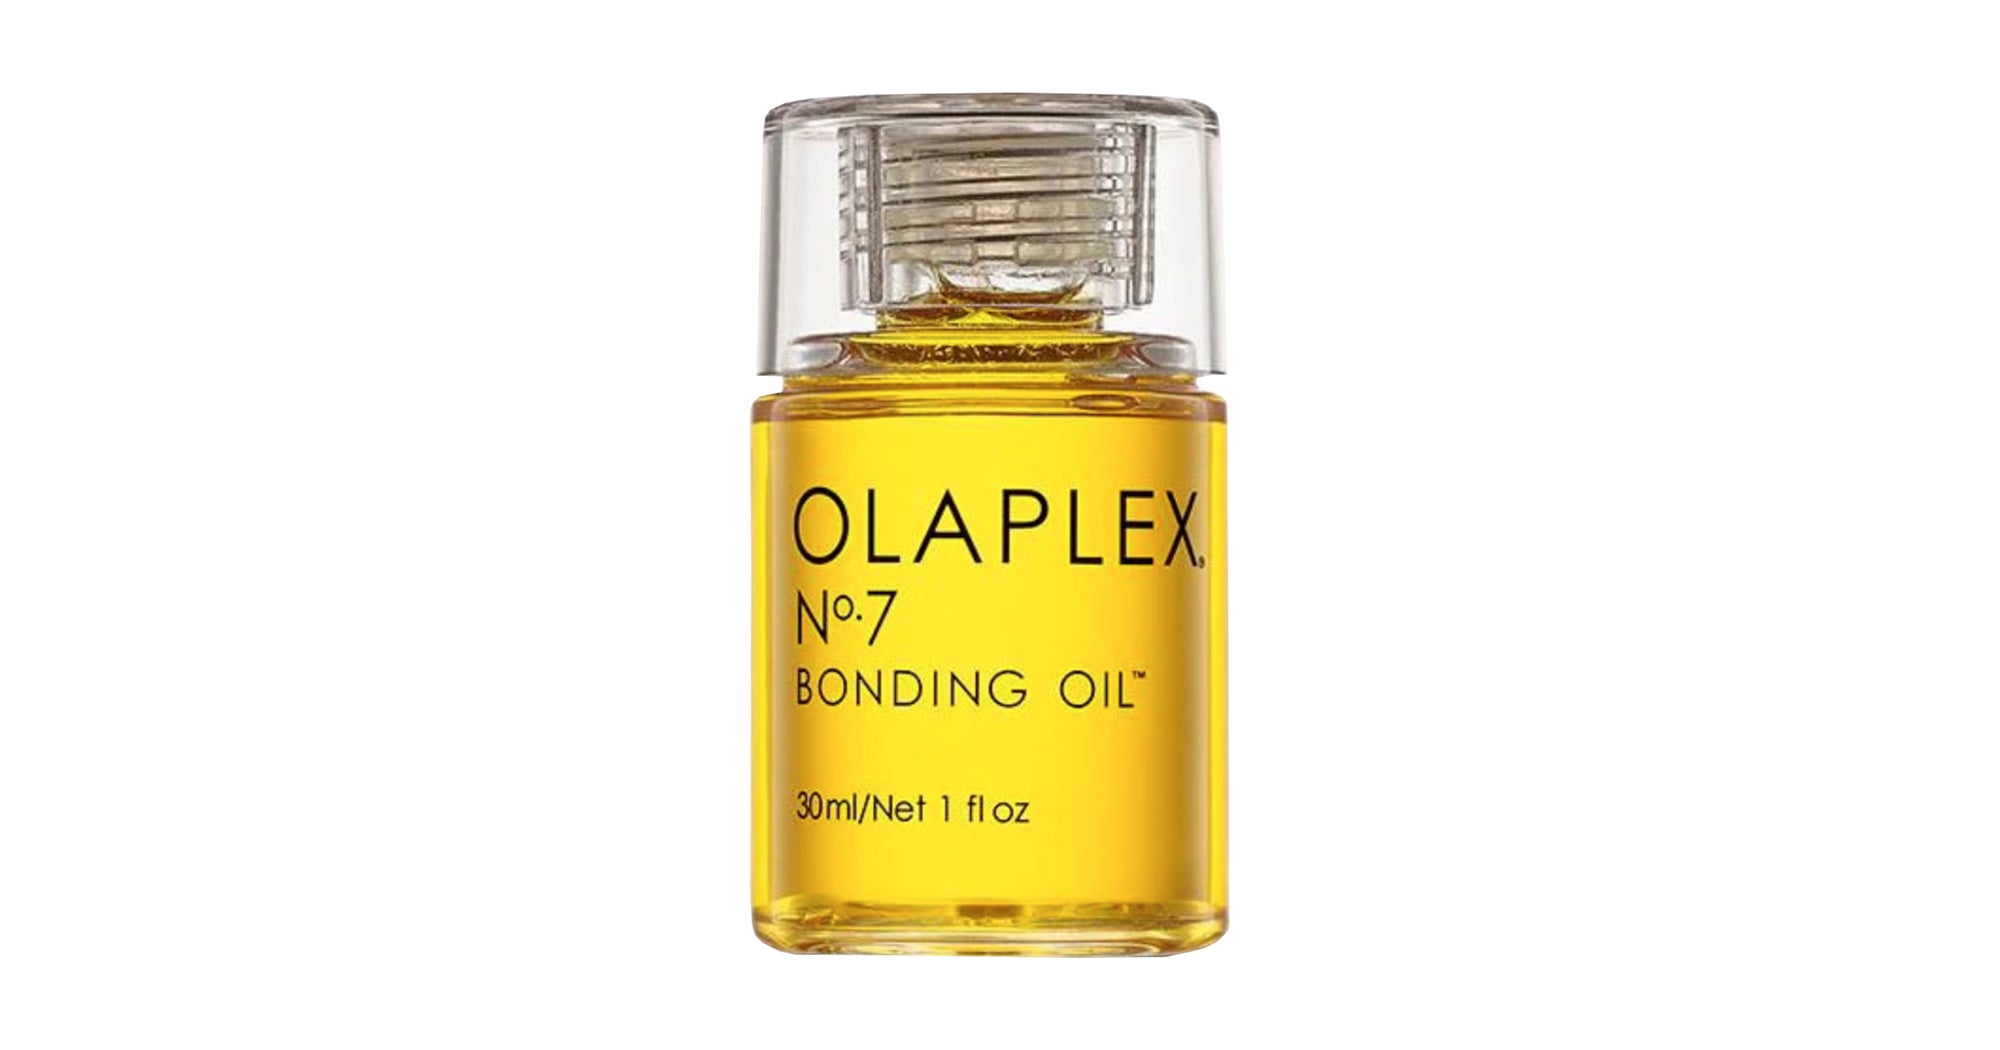 How to Bond with your No.7: Uses for Olaplex No.7 Bonding Oil - OLAPLEX Inc.